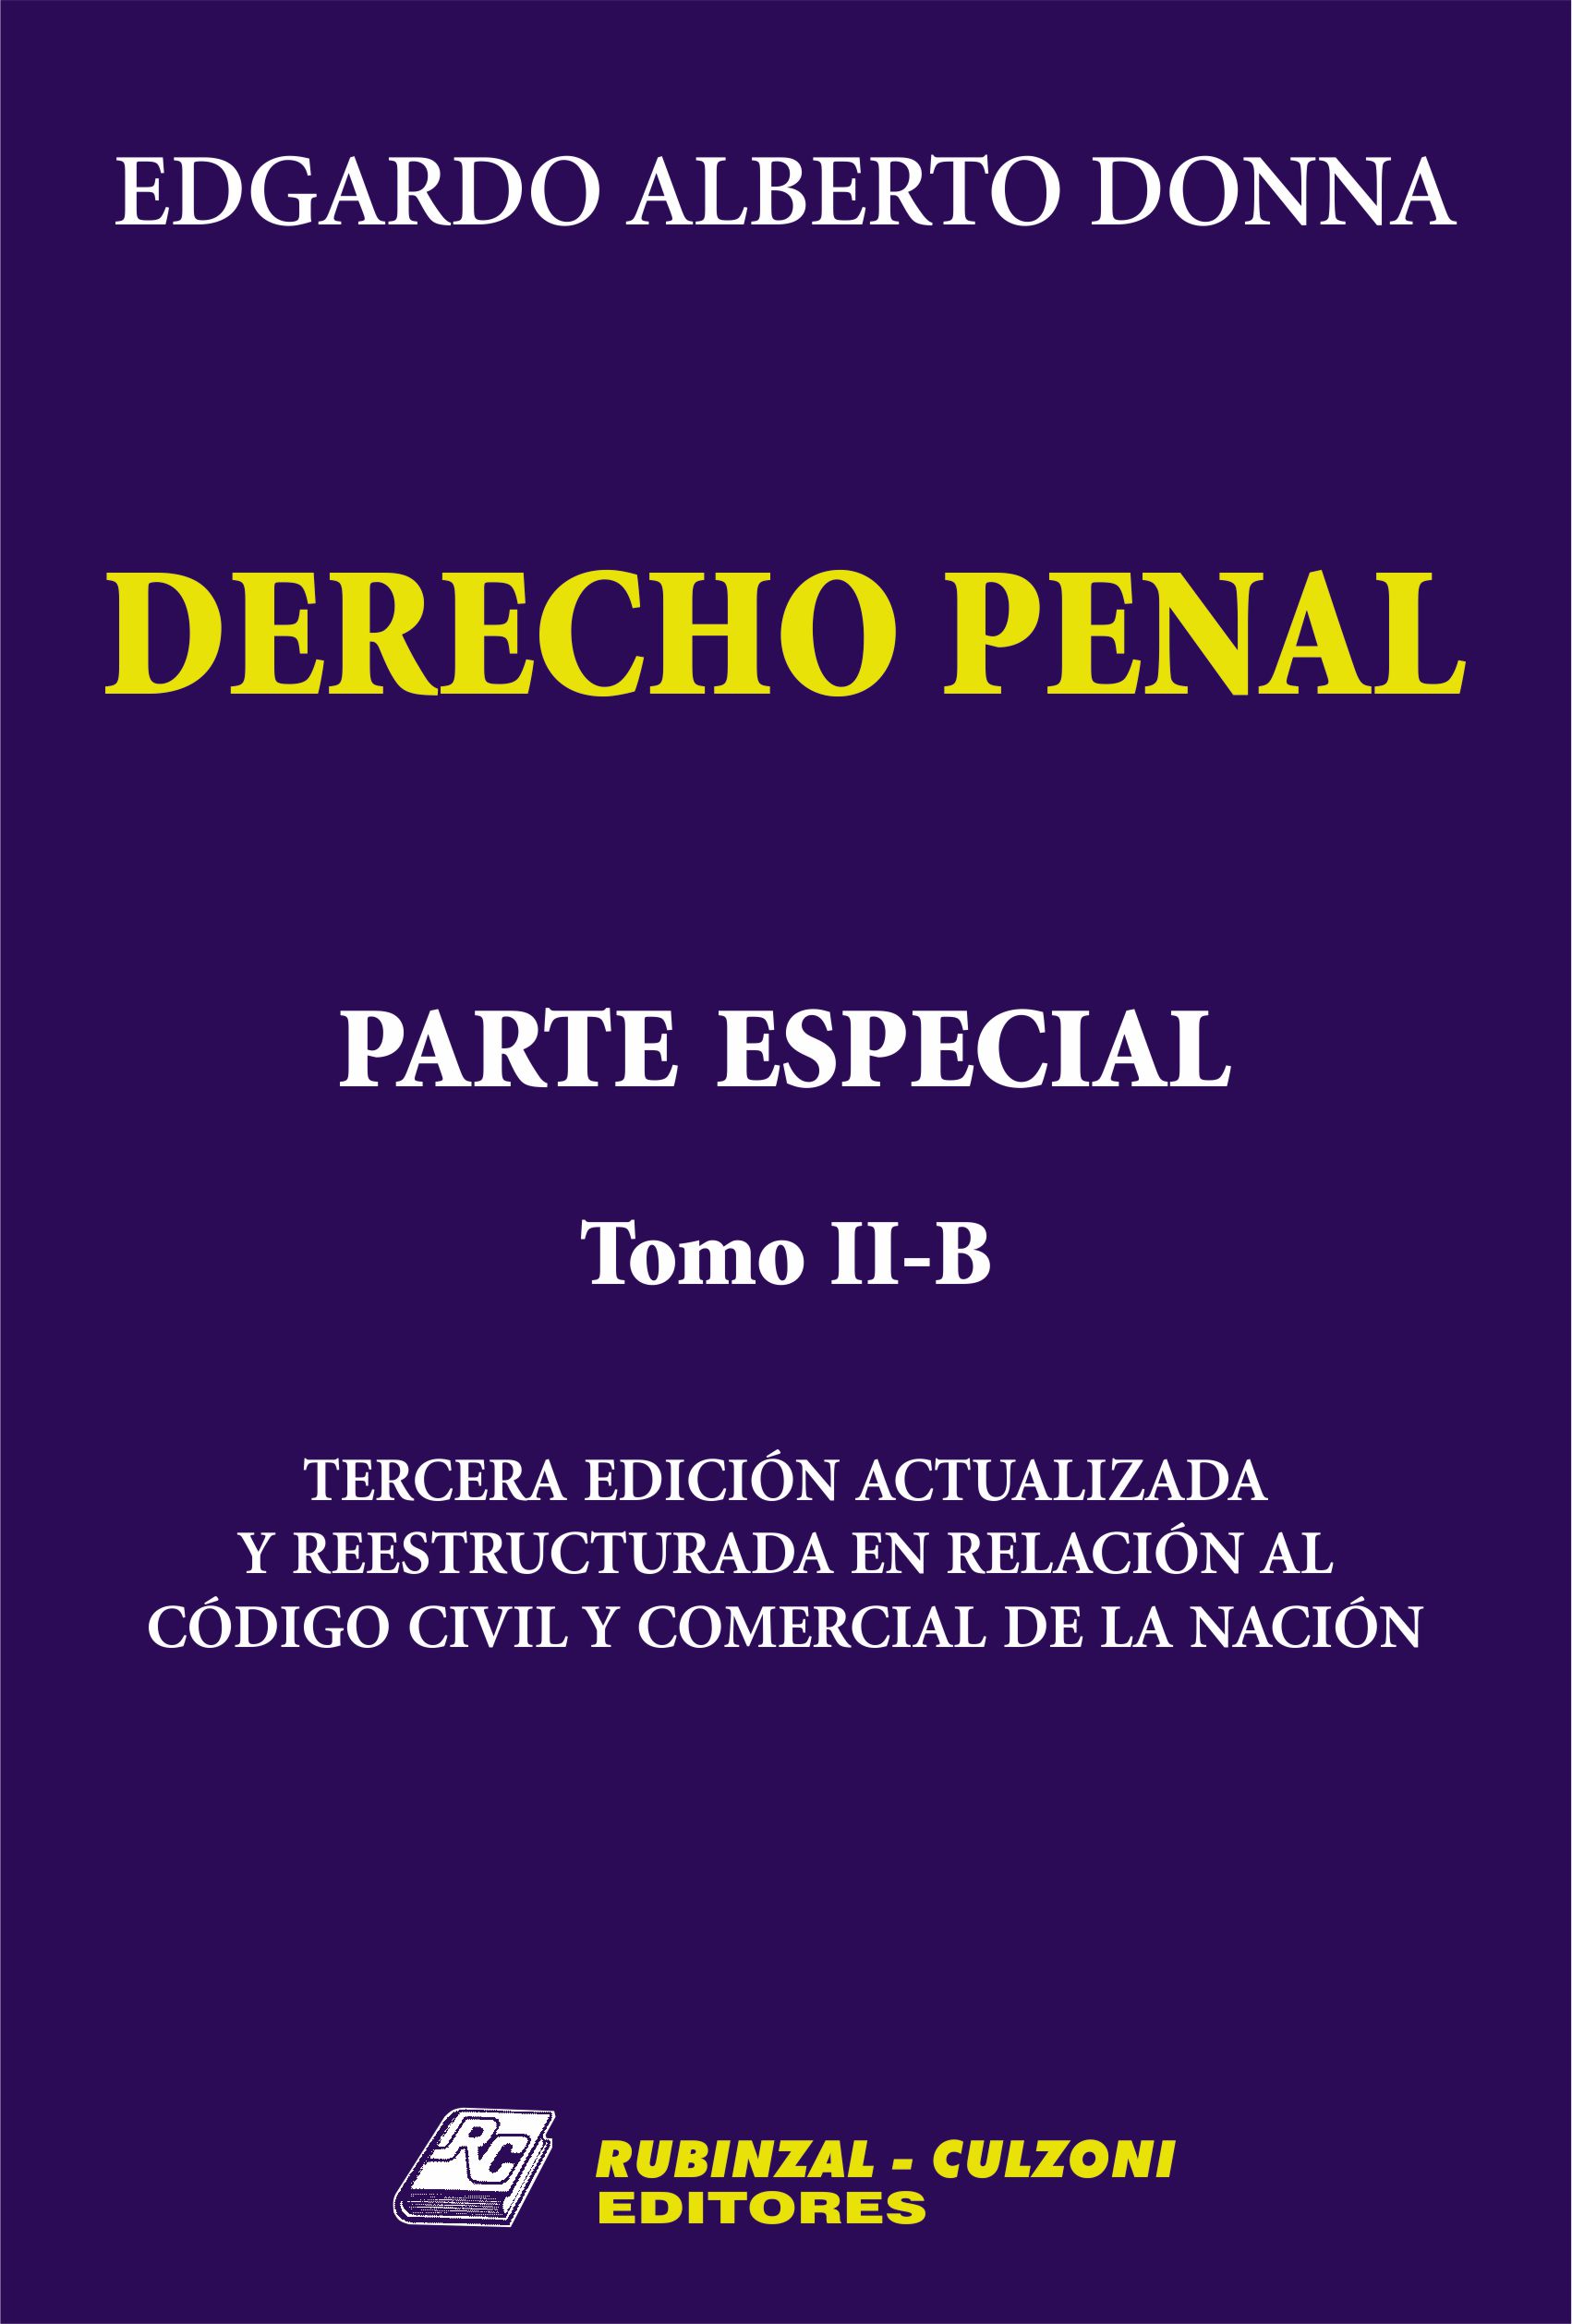 Derecho Penal. Parte Especial. - Tomo II-B. 3ª Edición actualizada y reestructurada en relación al Código Civil y Comercial de la Nación